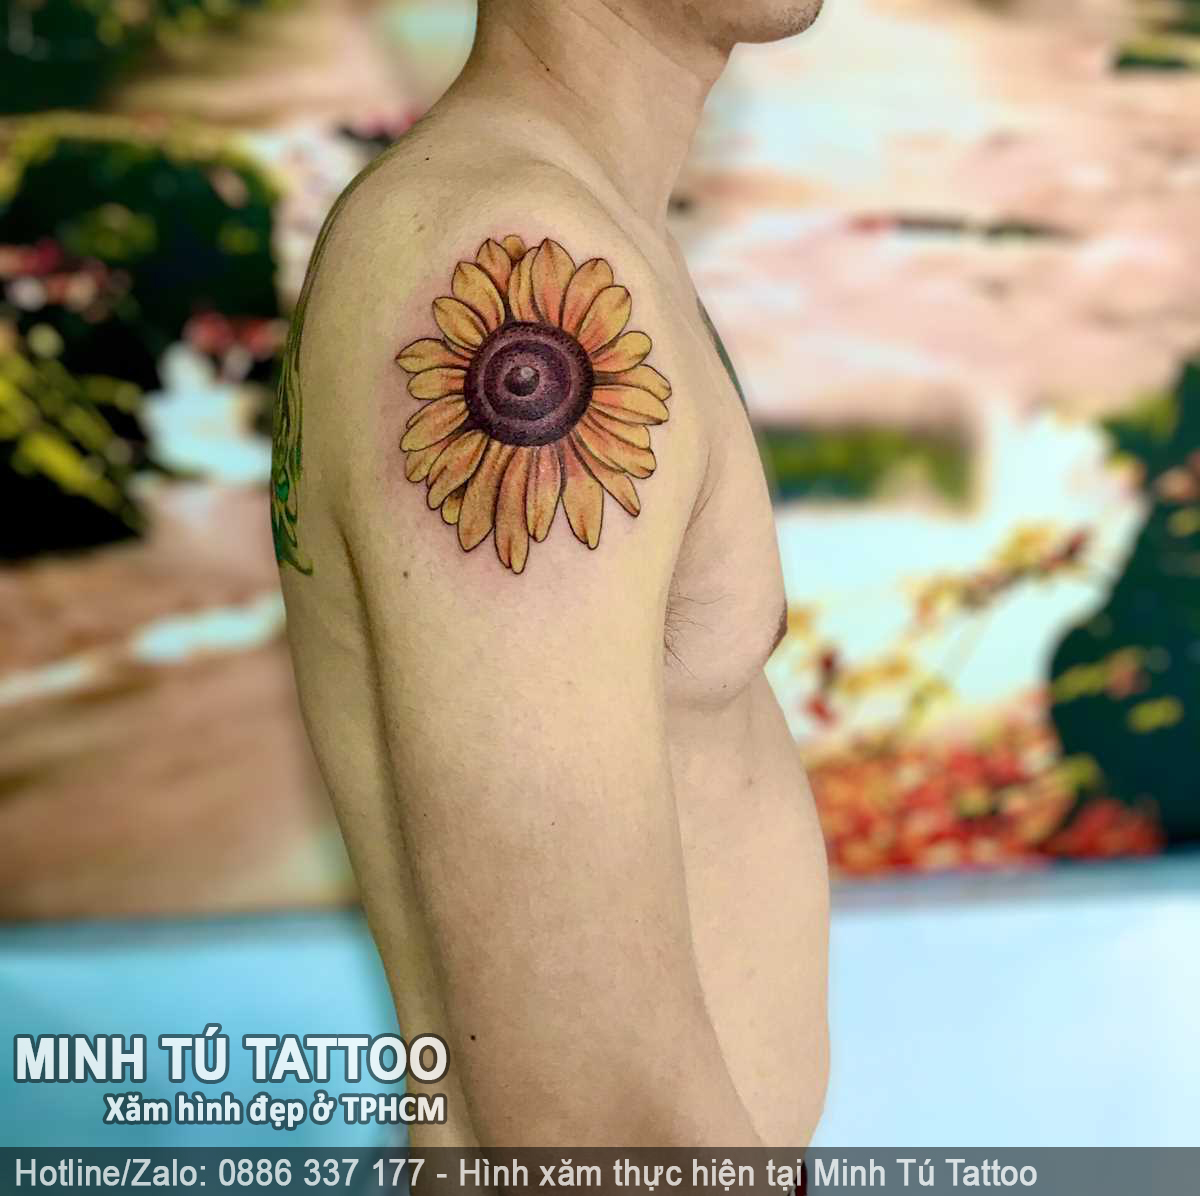 Tác phẩm hình xăm do Minh Tú Tattoo thực hiện 117